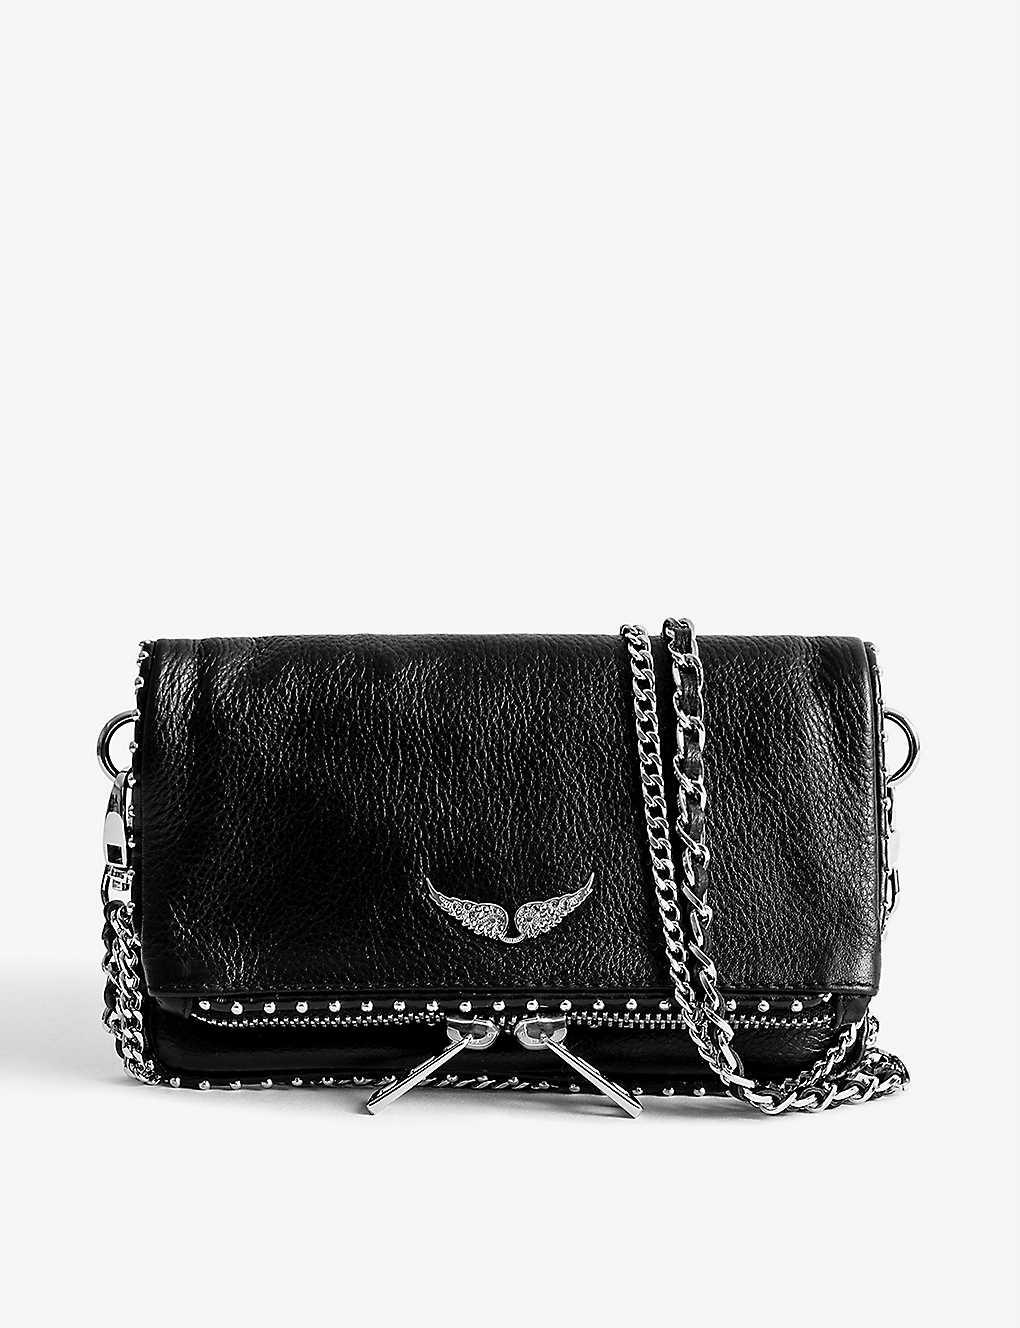 Zadig & Voltaire Rock Stud-embellished Leather Clutch Bag in Black